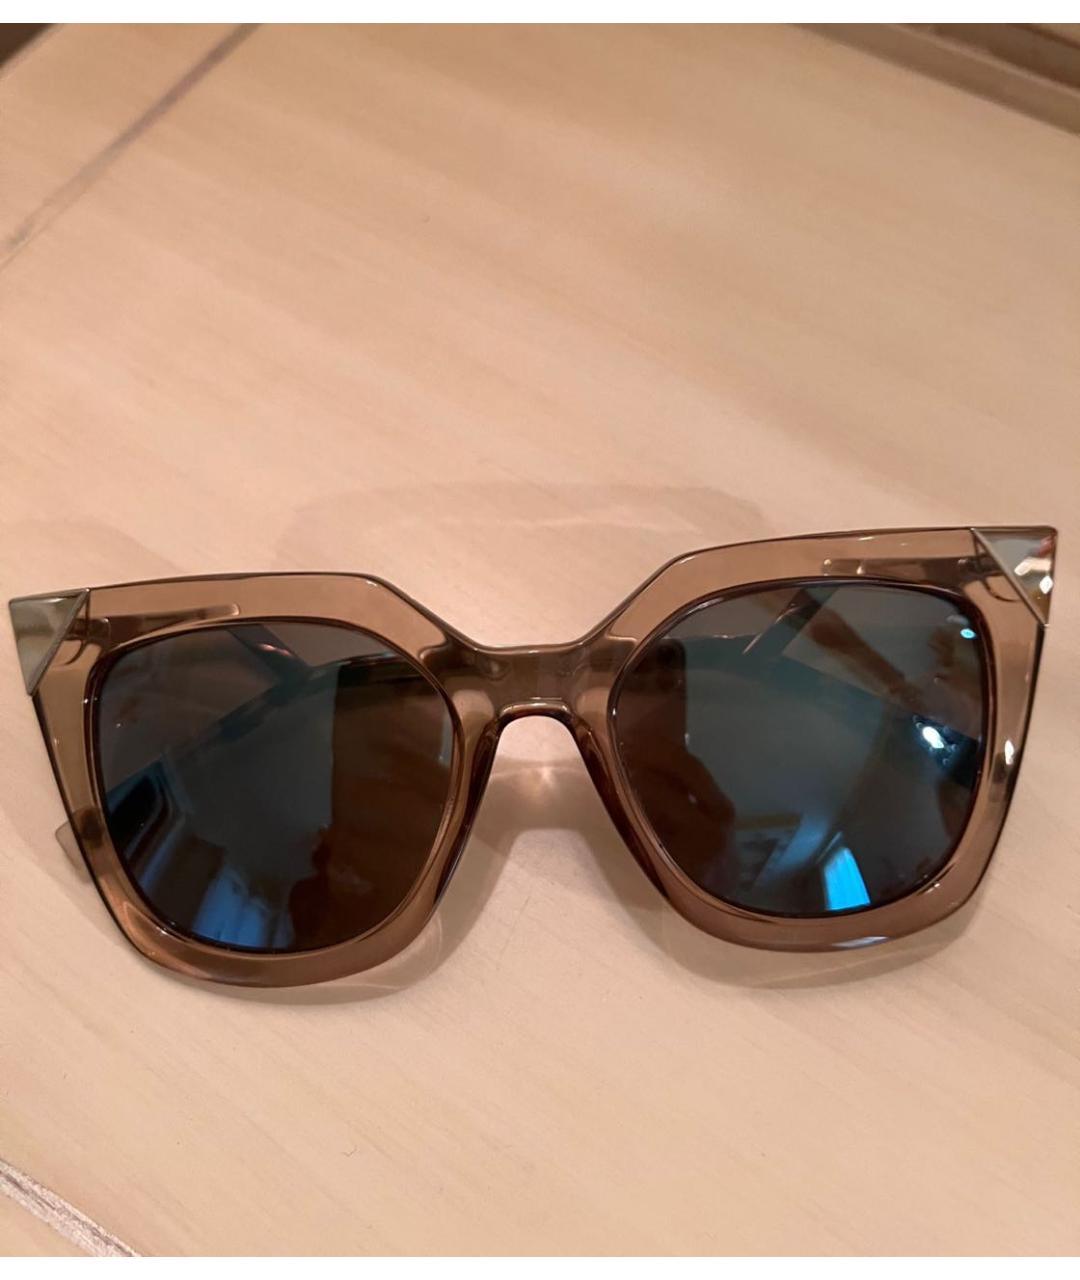 FENDI Коричневые пластиковые солнцезащитные очки, фото 7